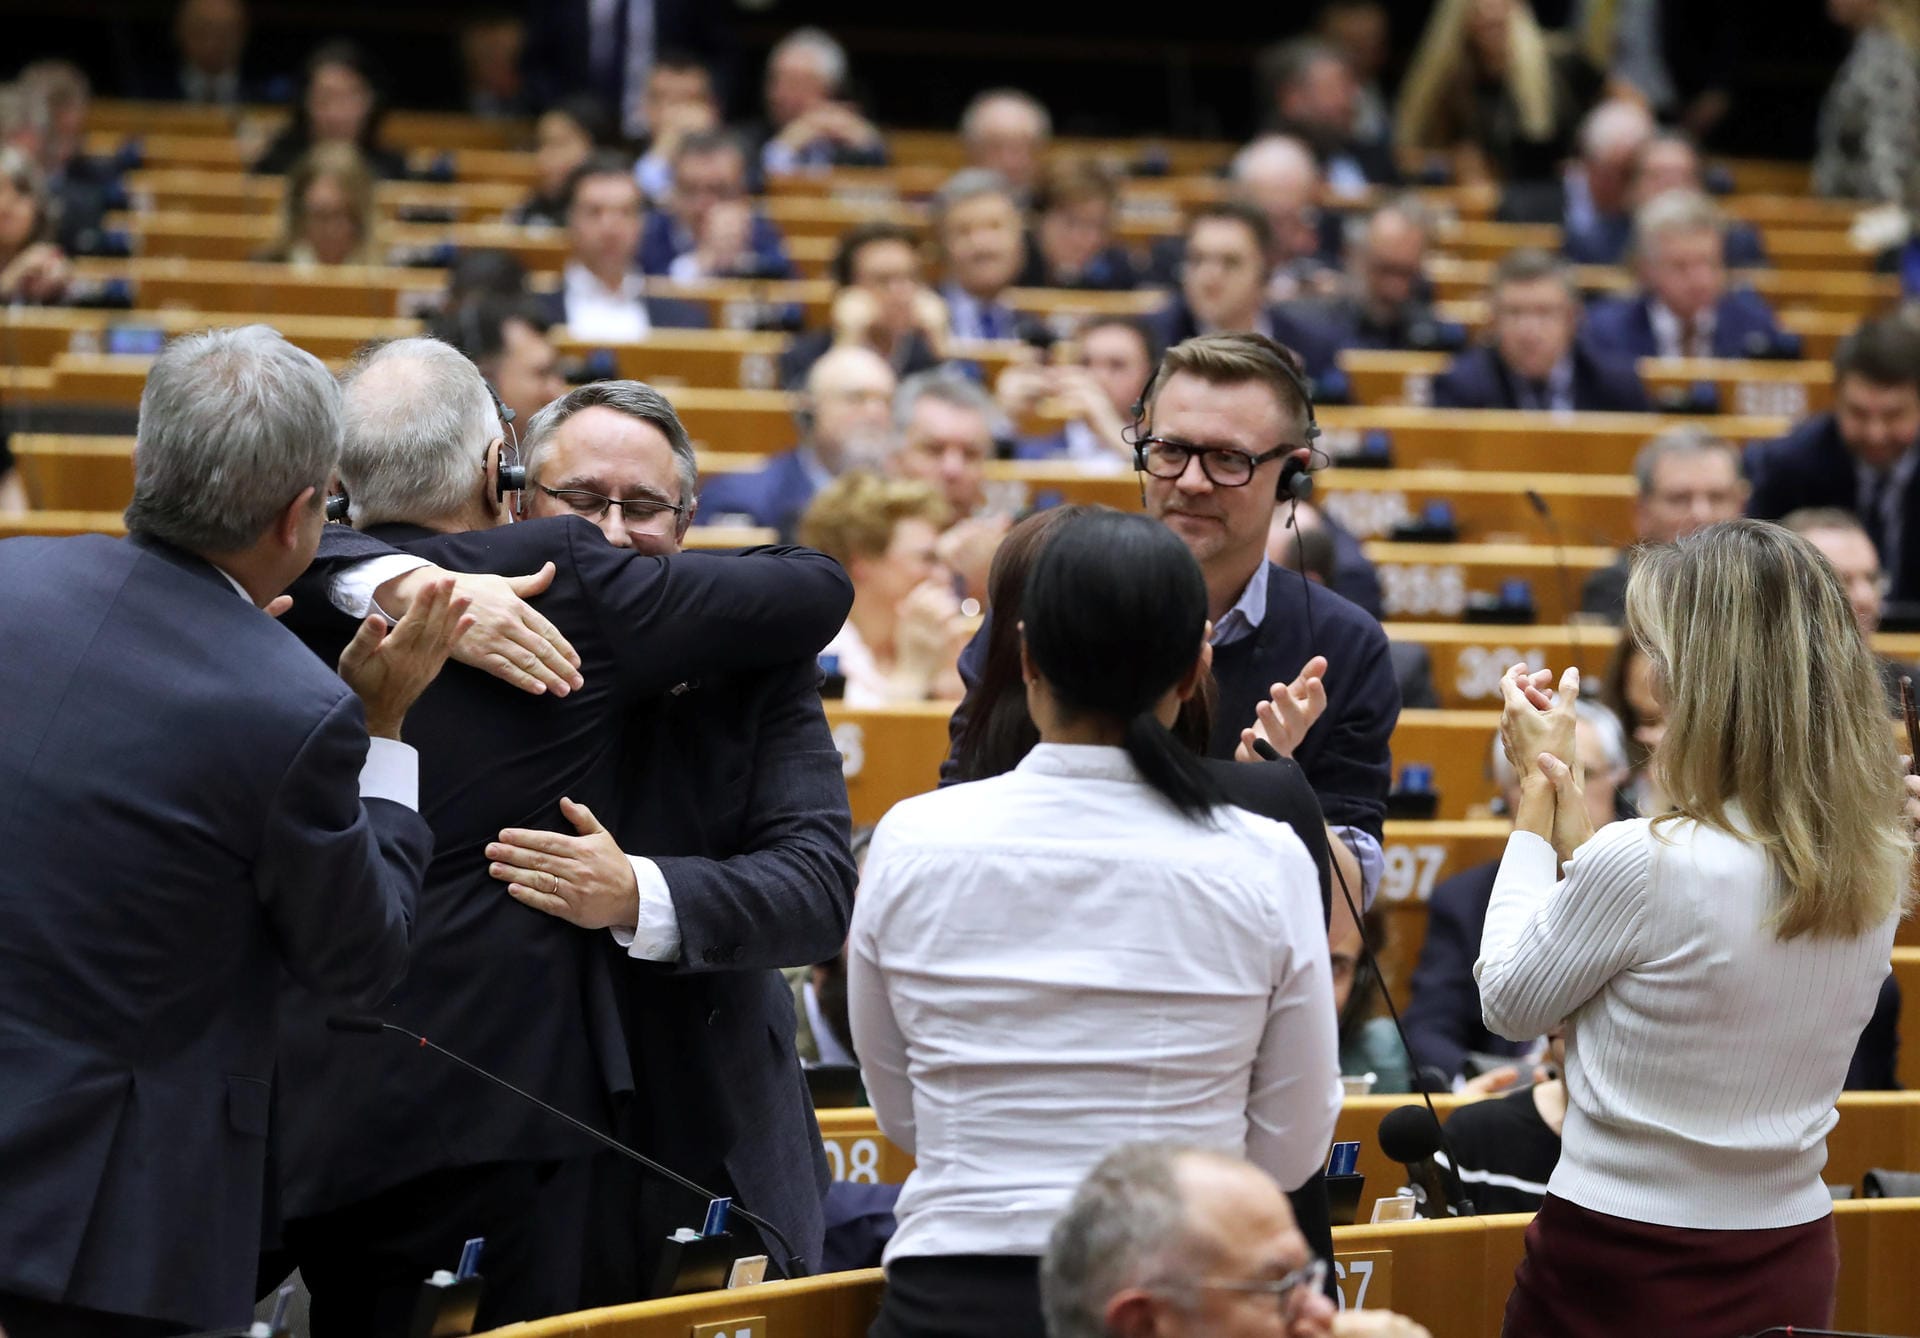 "Für immer zusammen": Parlamentarier liegen sich in den Armen, später singen sie gemeinsam.